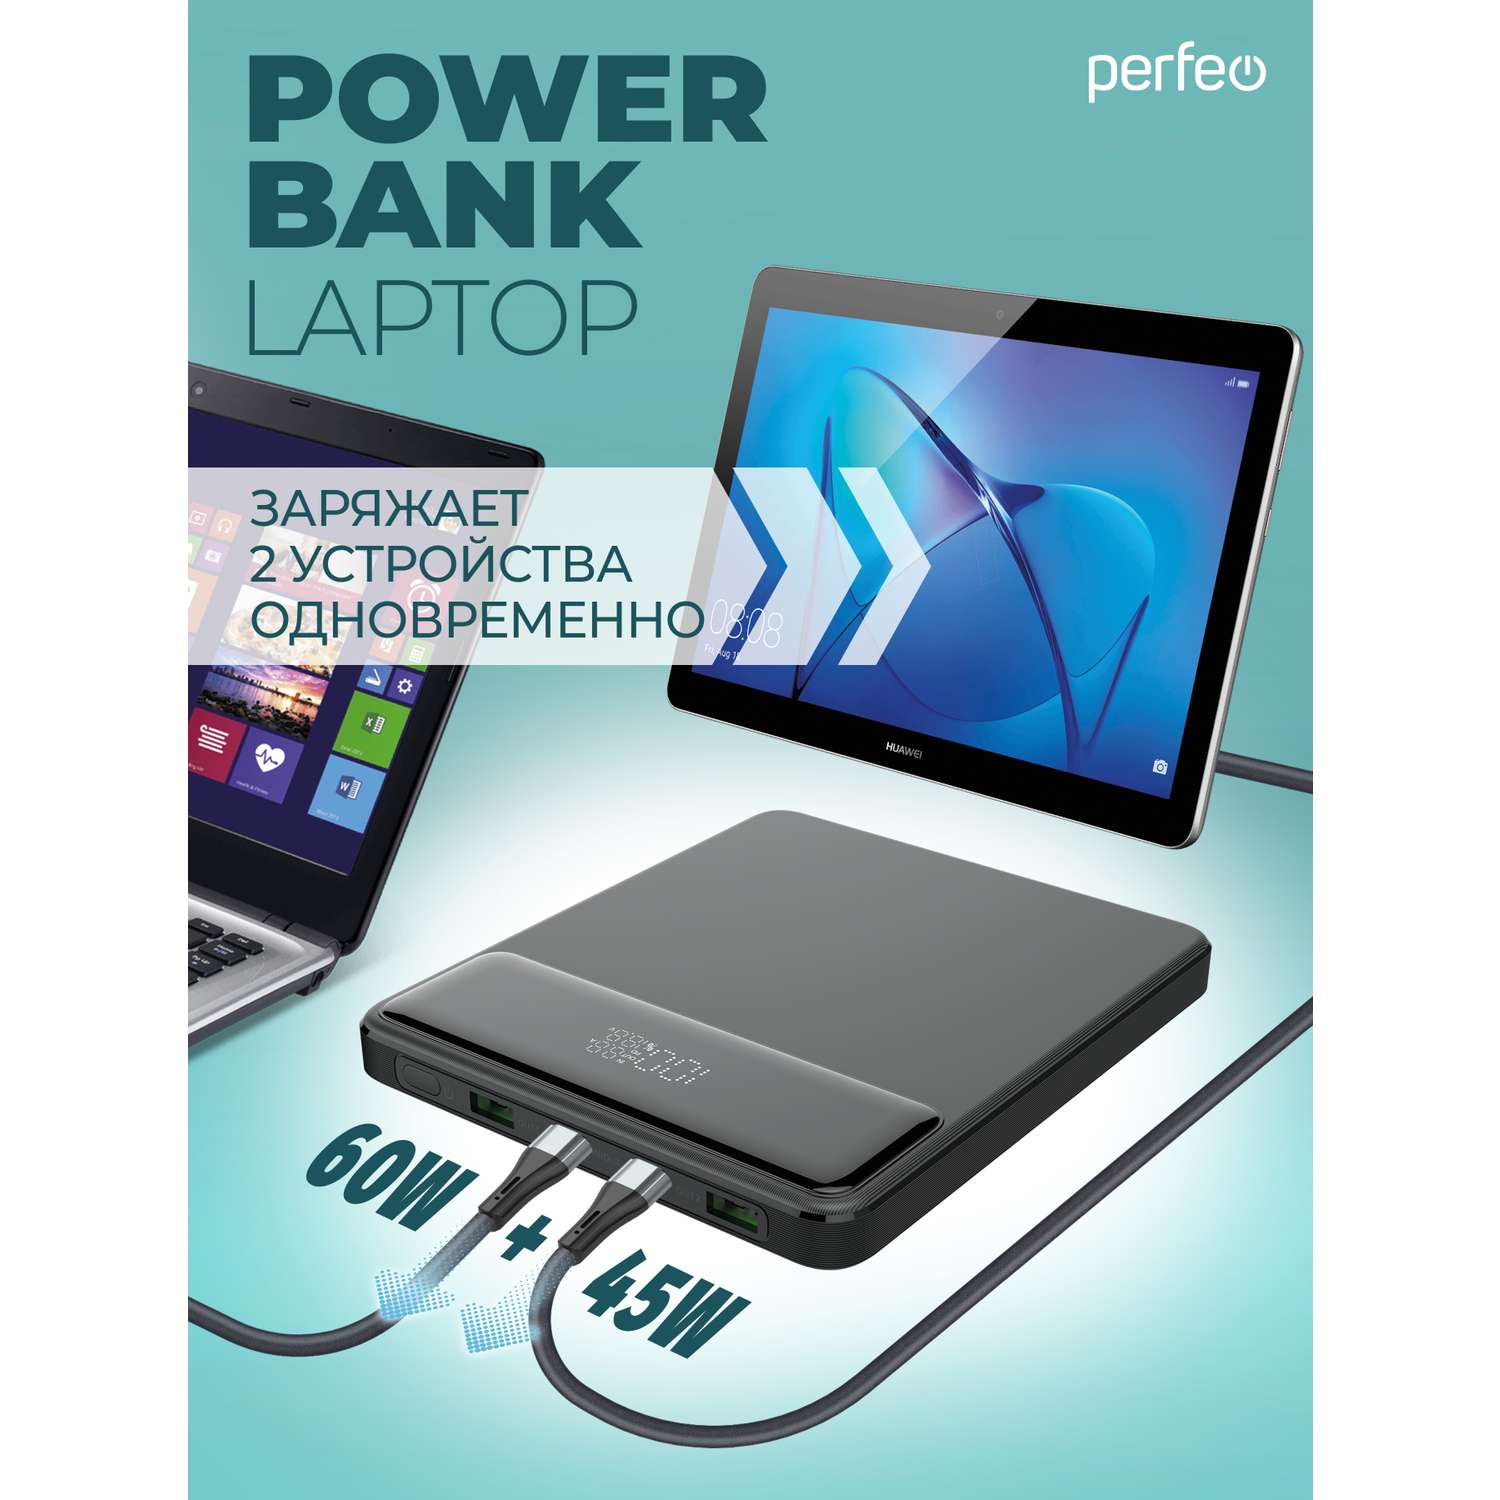 Внешний аккумулятор ноутбука Perfeo Laptop - фото 2